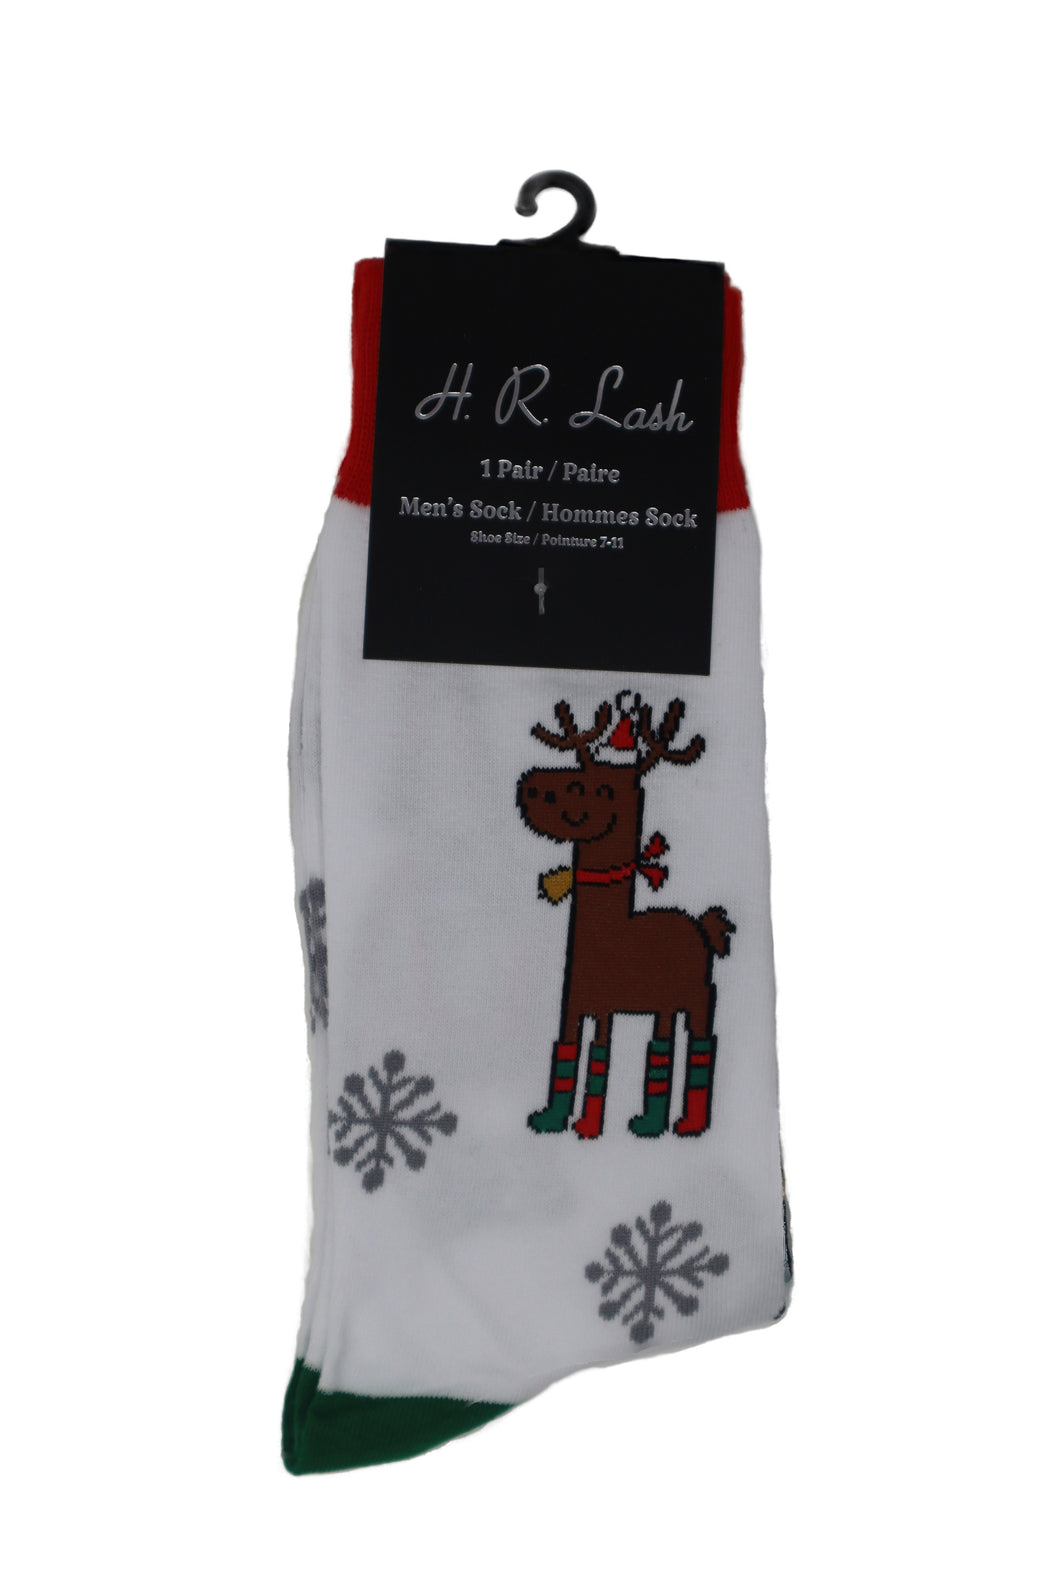 H. R. Lash | FS179 | Fun Socks | White Christmas